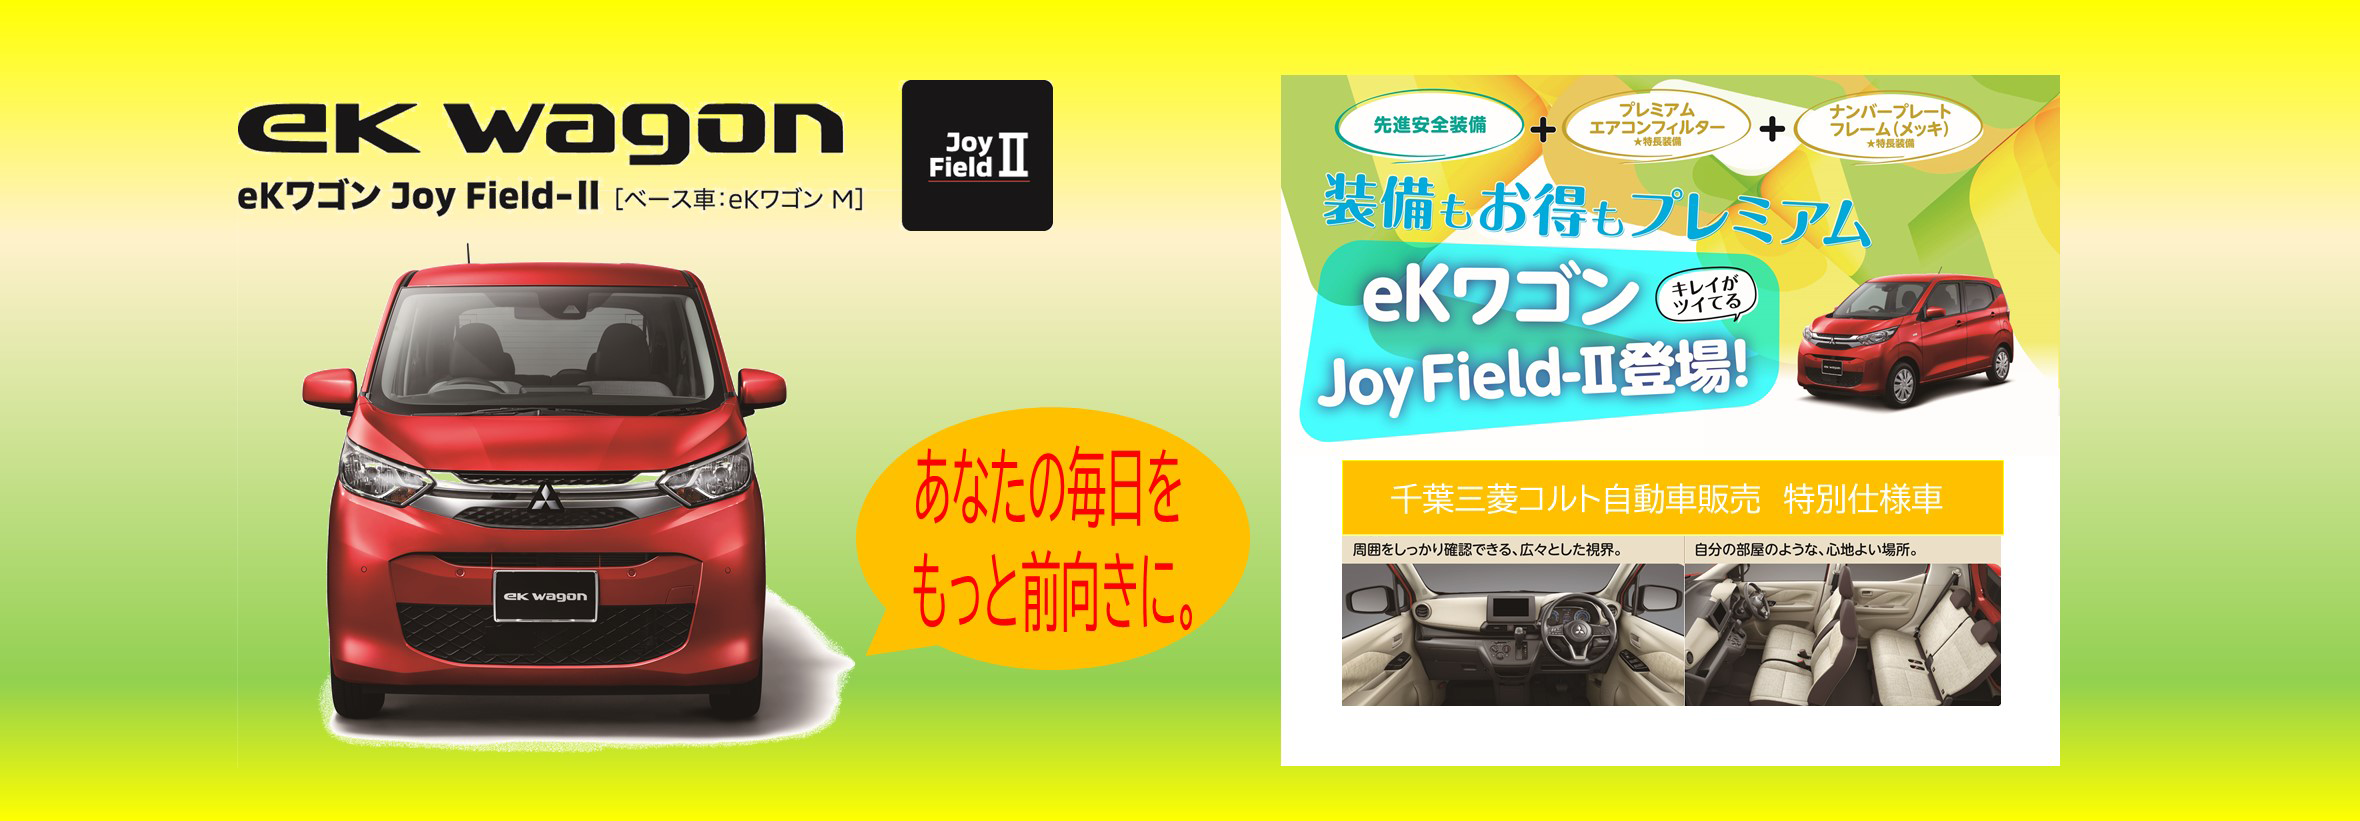 eKワゴン Joy Field 登場! | サムネイル